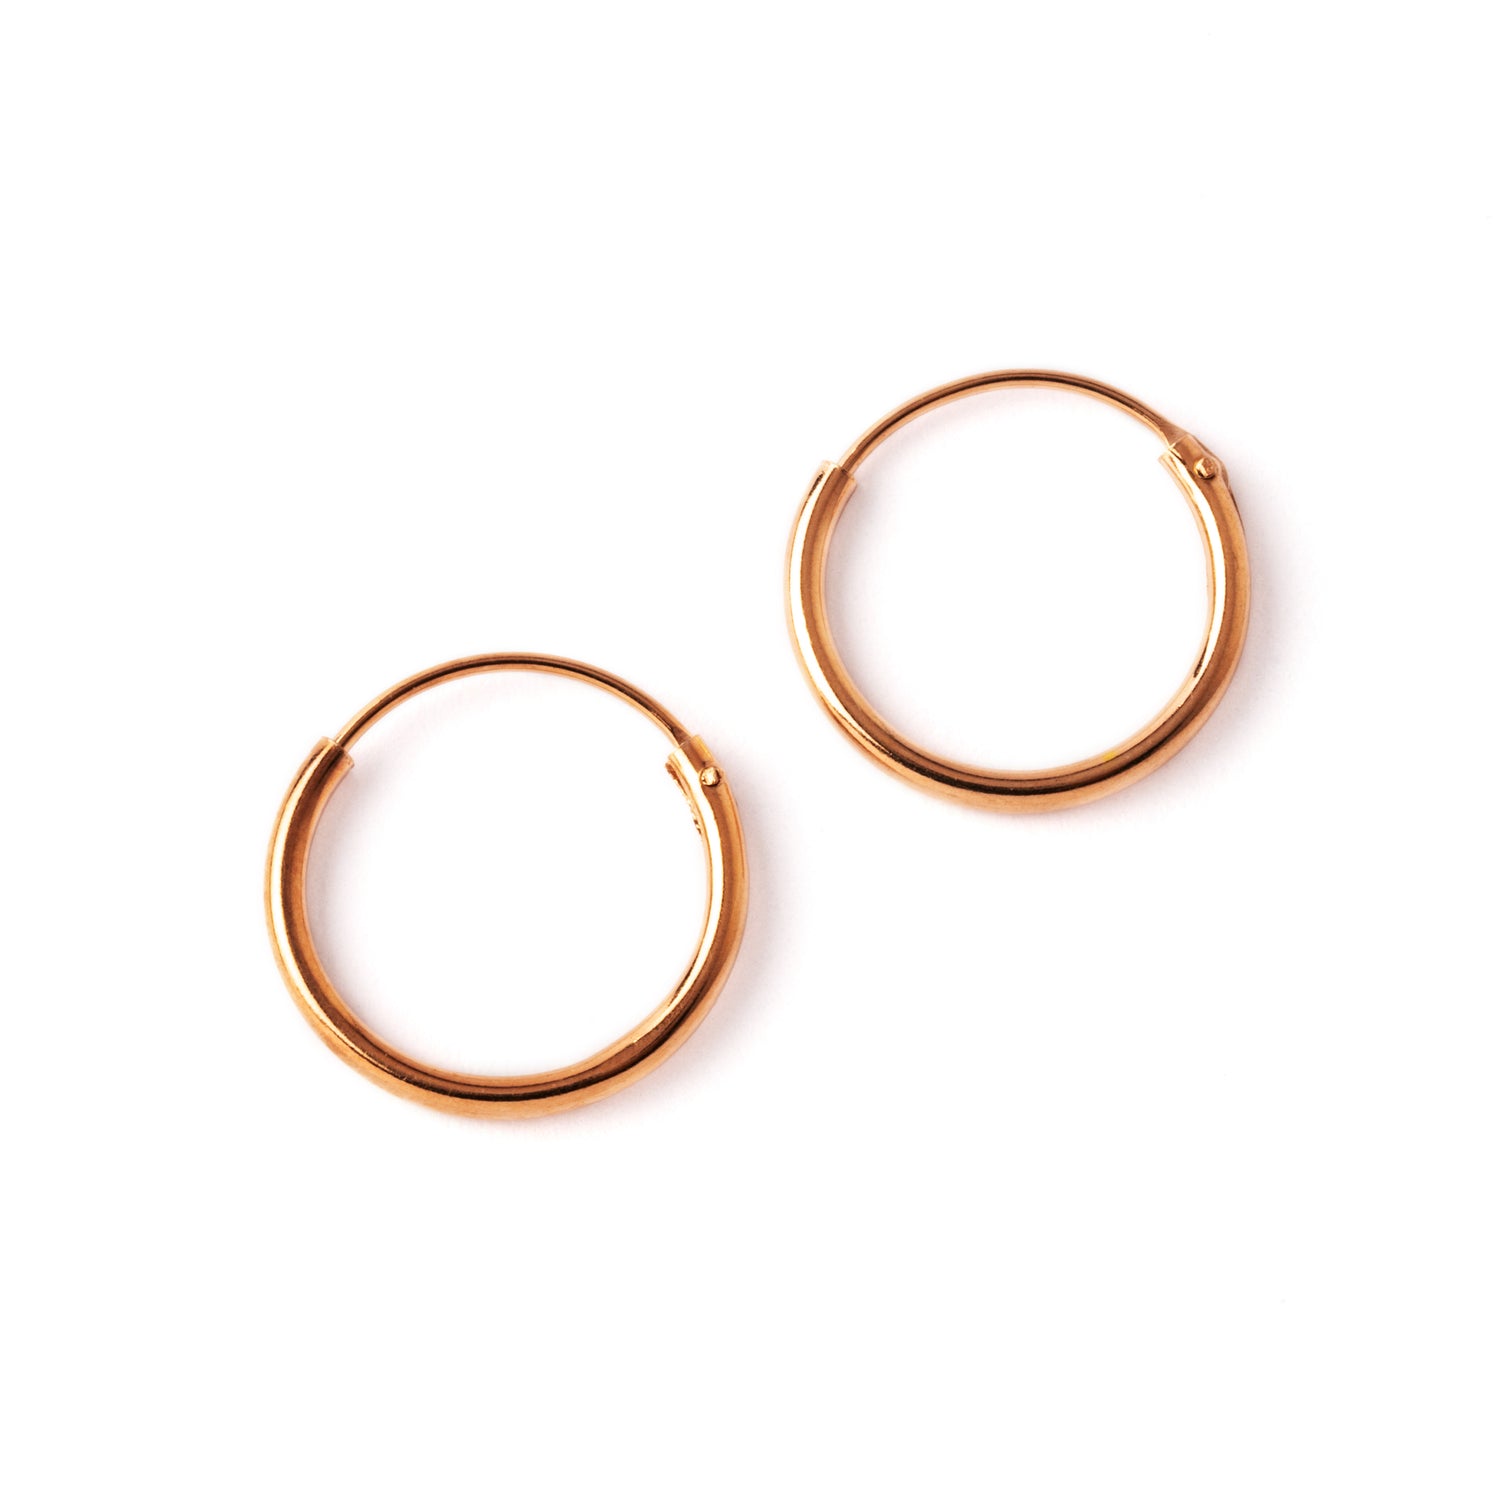 pair of rose gold hoop earrings frontal view